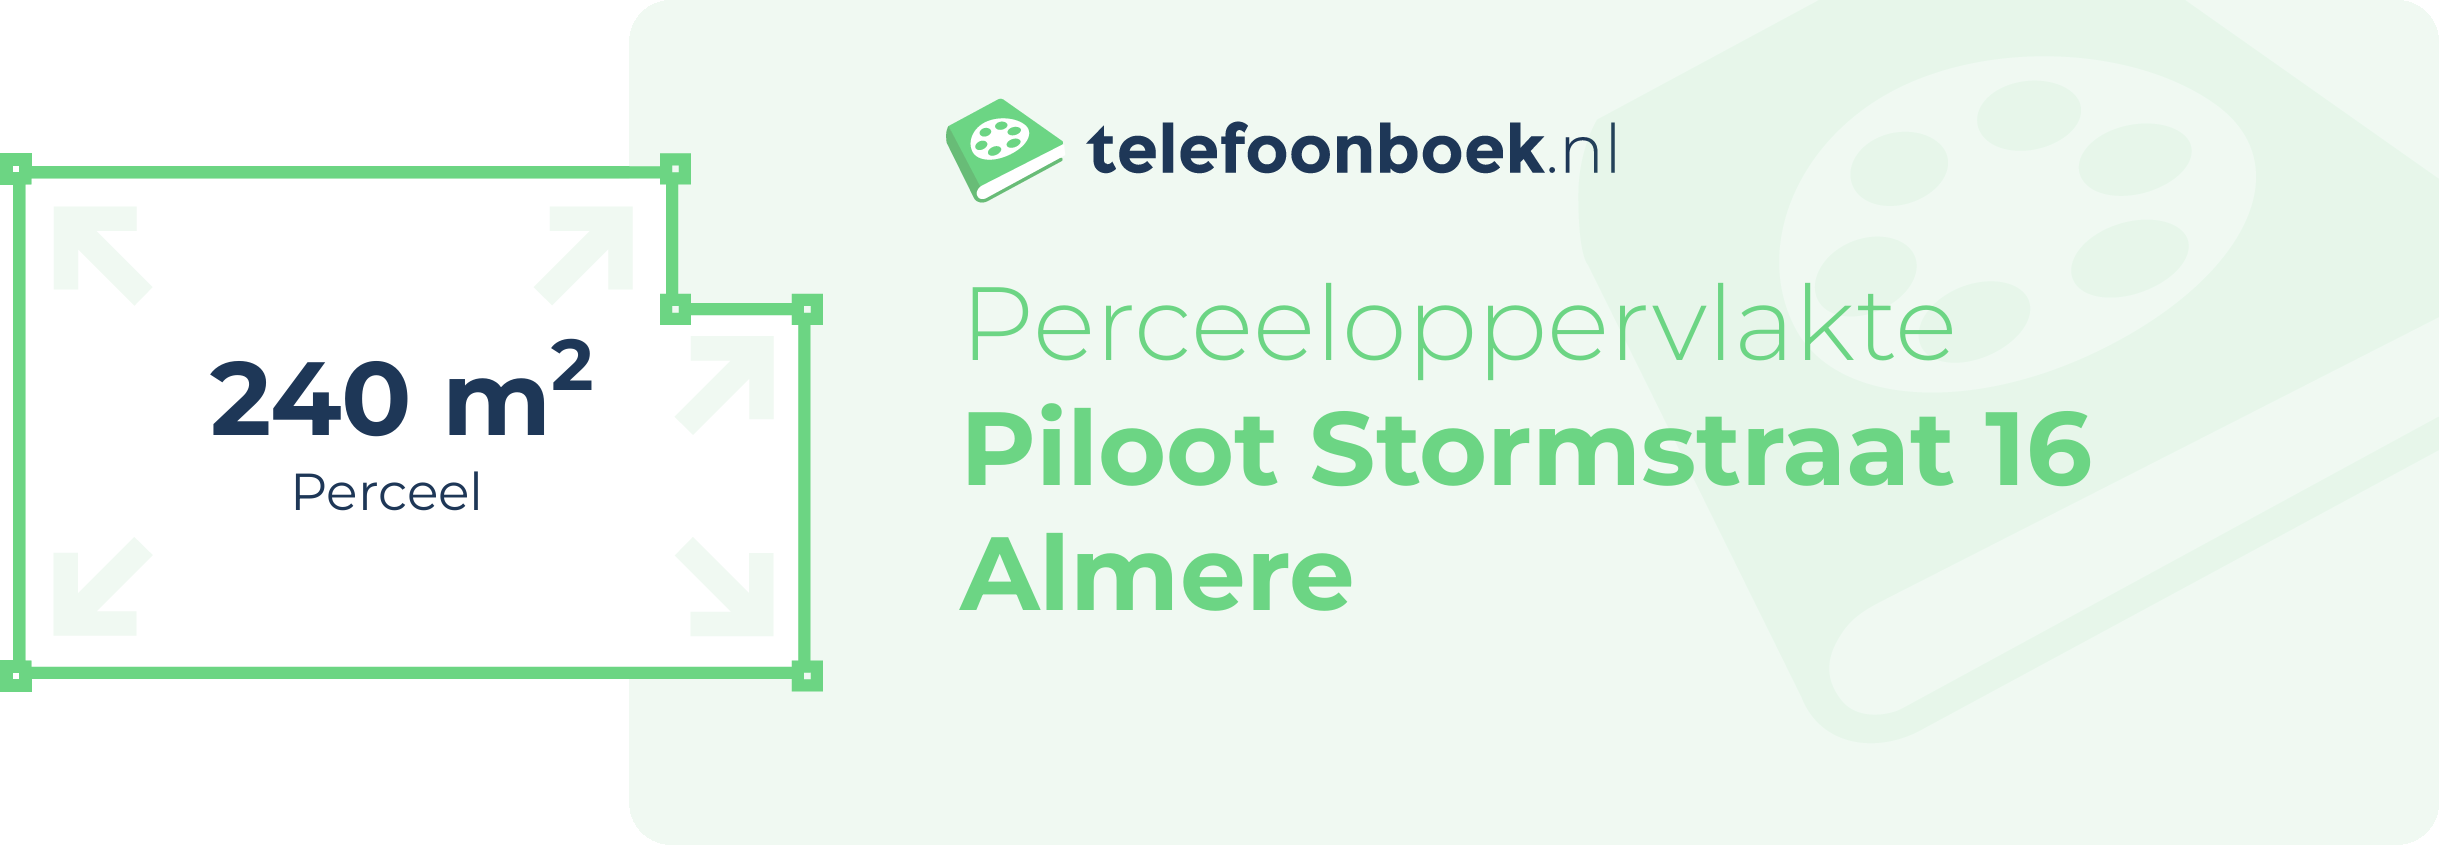 Perceeloppervlakte Piloot Stormstraat 16 Almere